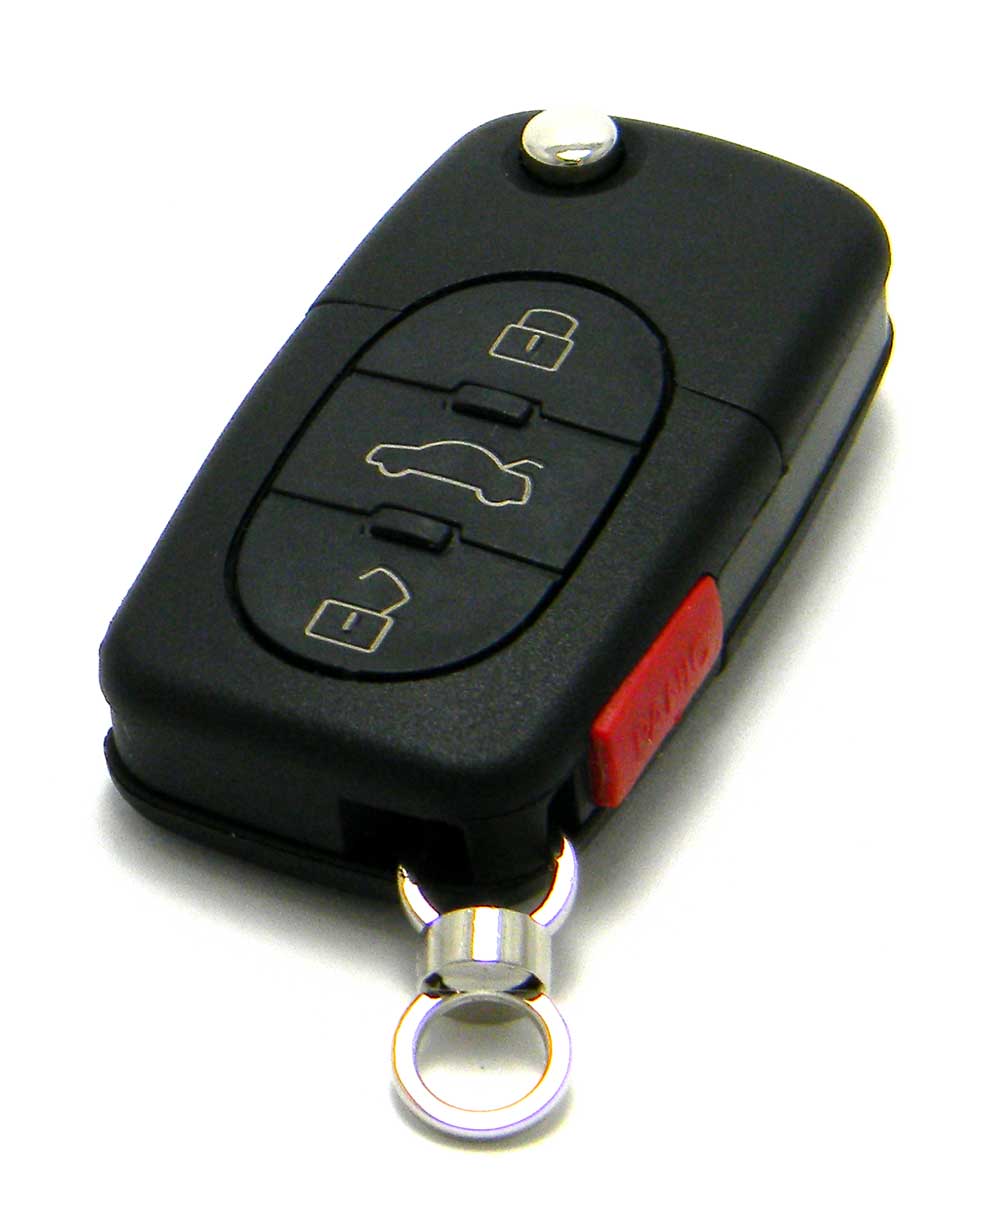 19982001 Volkswagen Passat Keyless Entry Remote